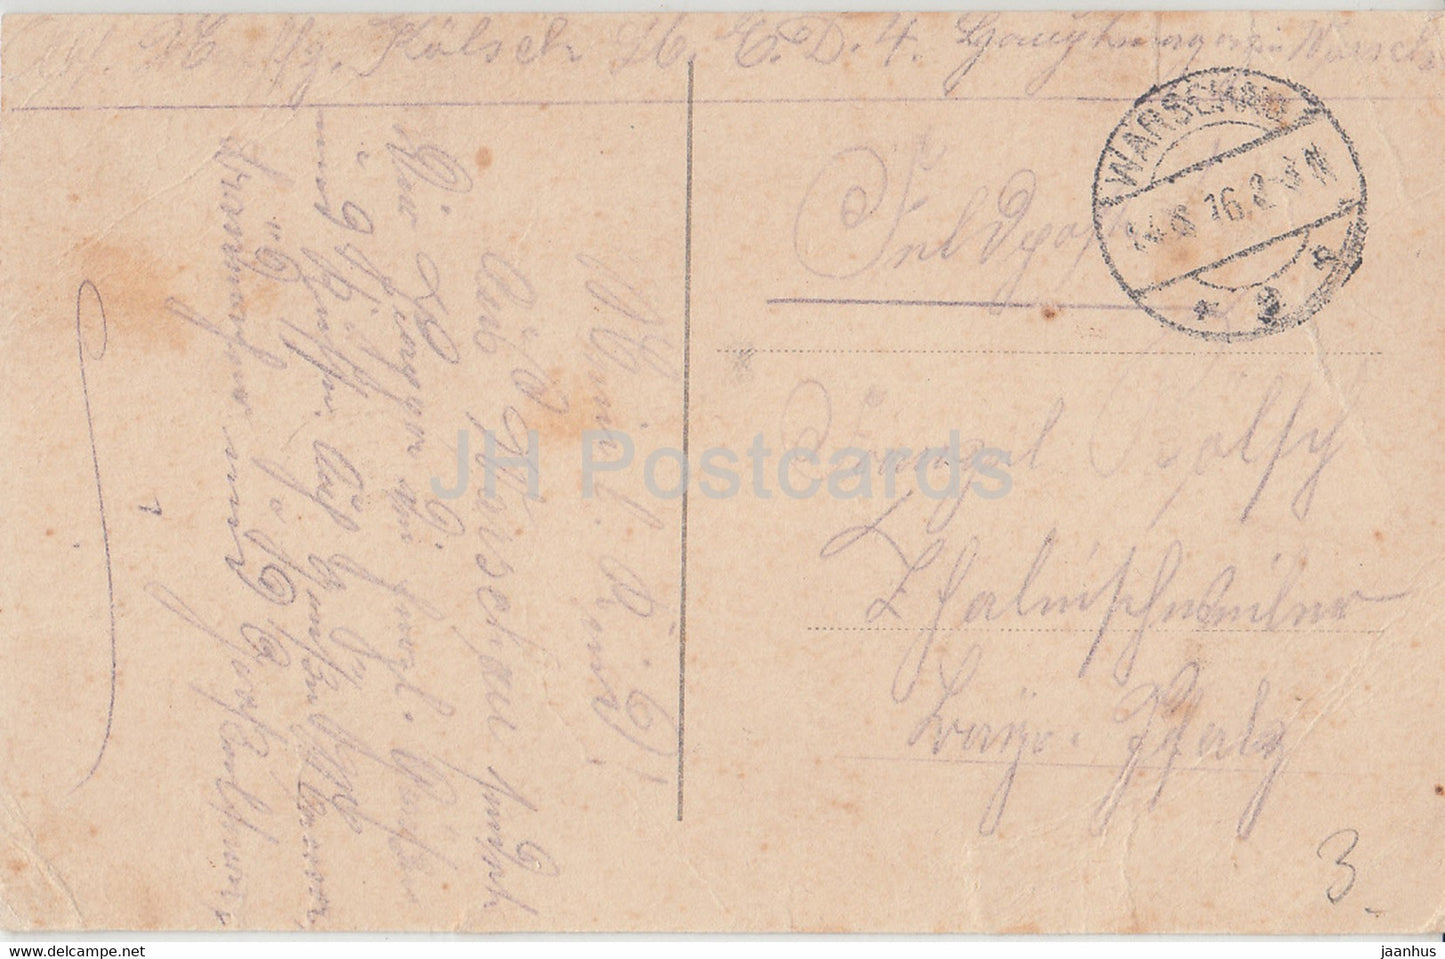 Warschau - Denkmal König Sigizmund - Feldpost - alte Postkarte - 1916 - Polen - gebraucht